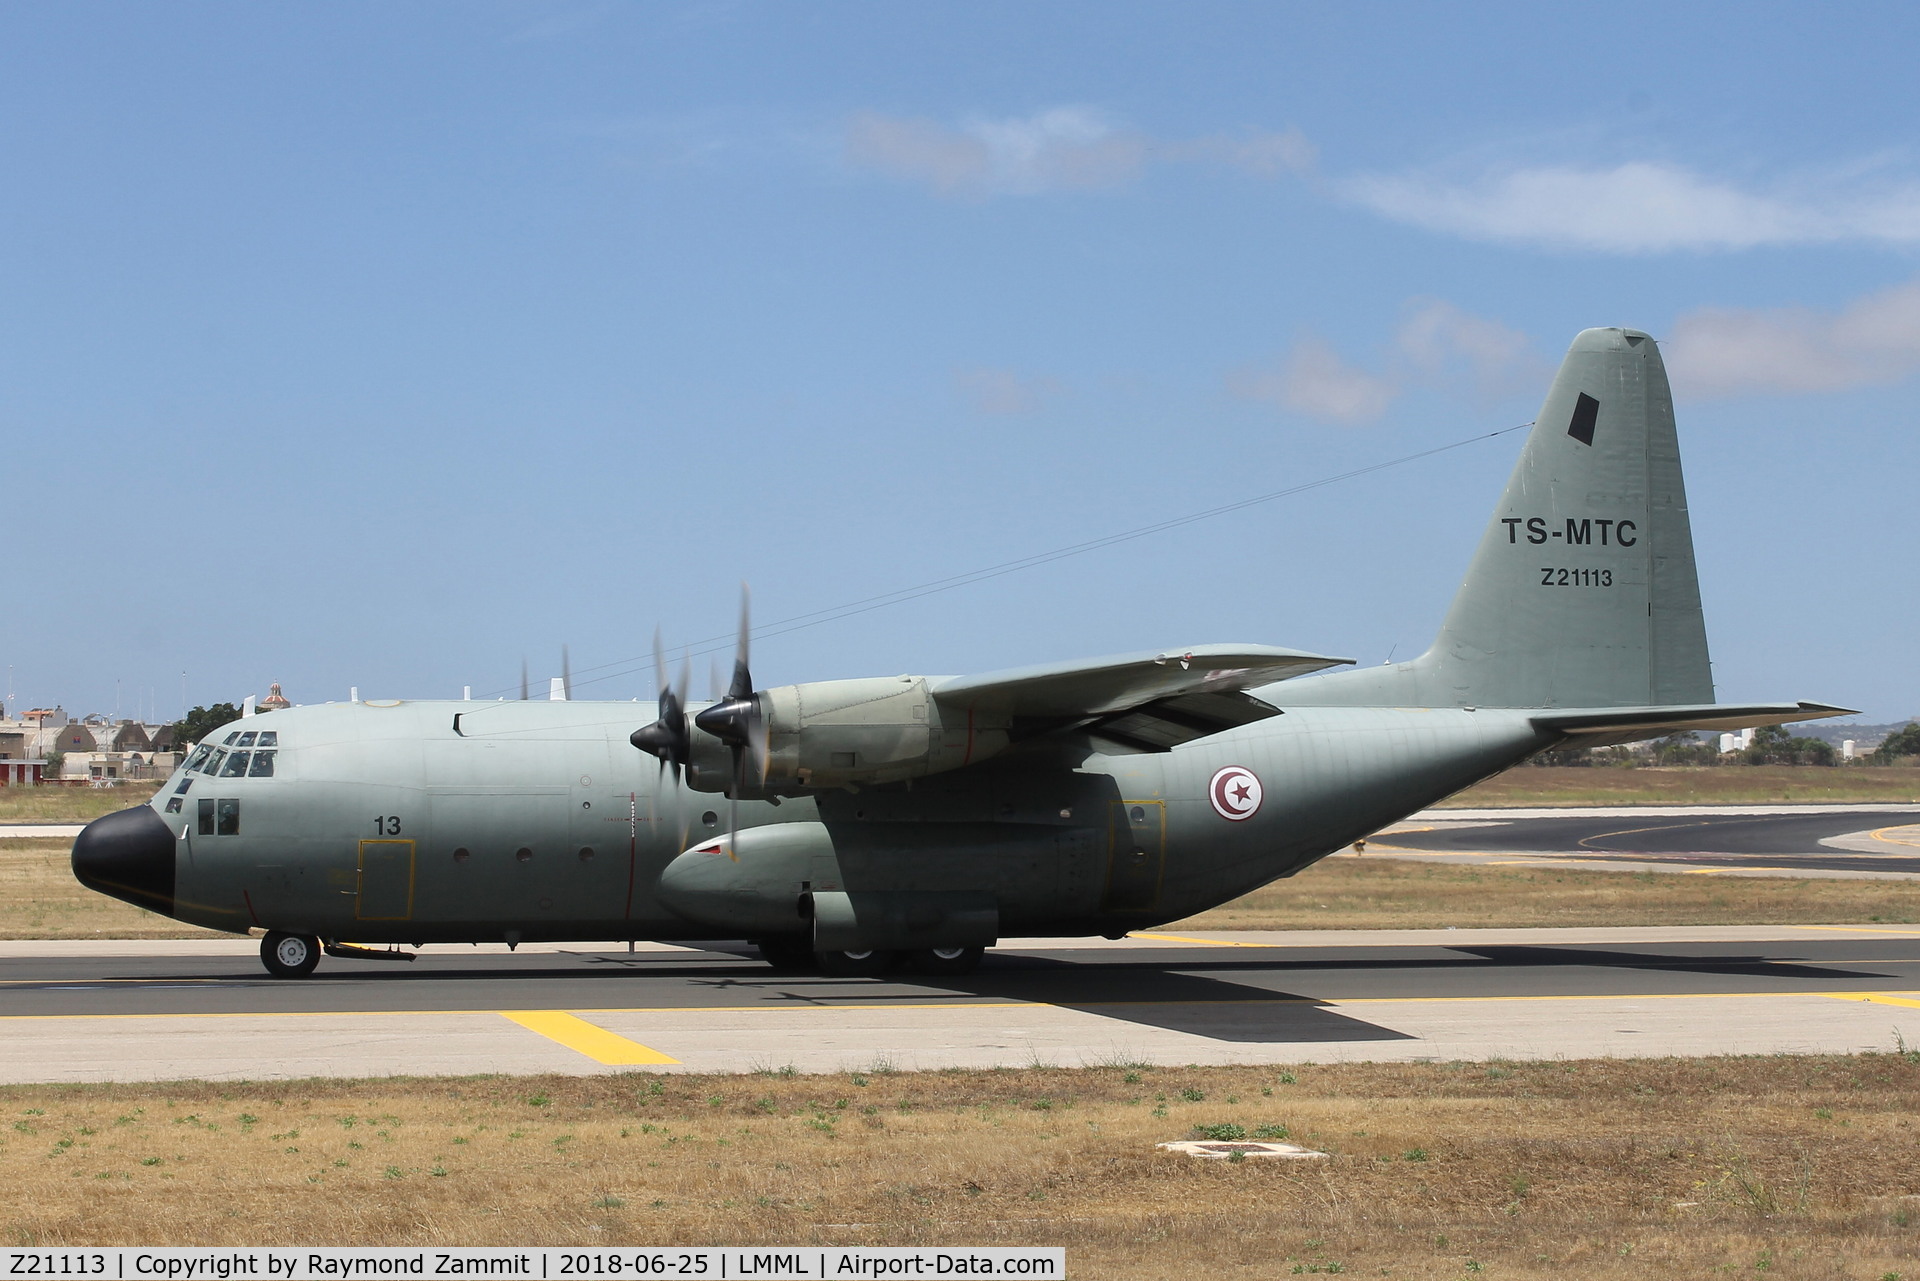 Z21113, Lockheed C-130B Hercules C/N 182-3625, Lockheed C-130B Hercules Z21113 TC-MTC Tunisian Air Force